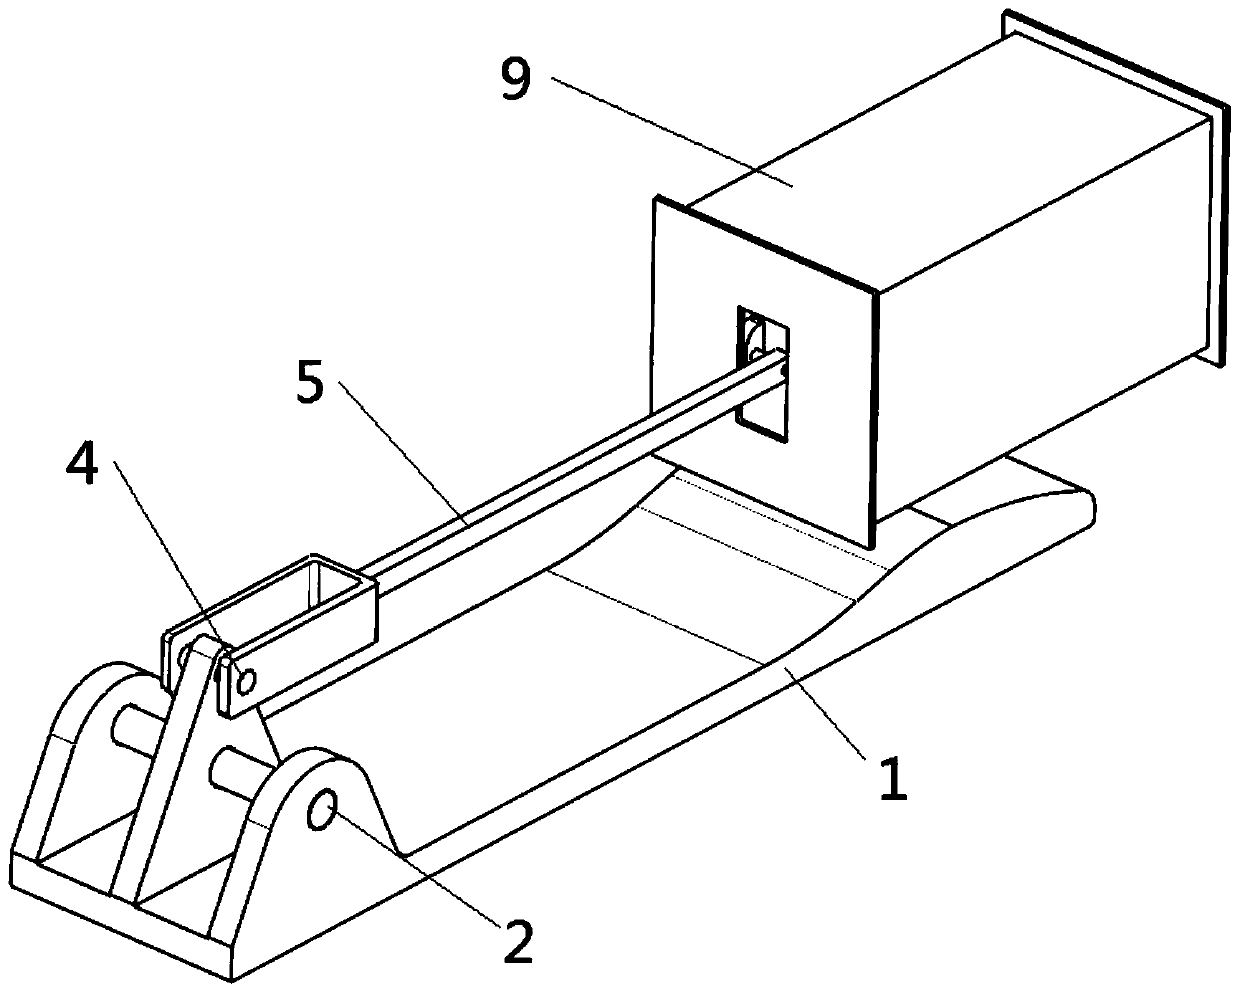 Self-ejecting self-resetting hidden type car door handle mechanism